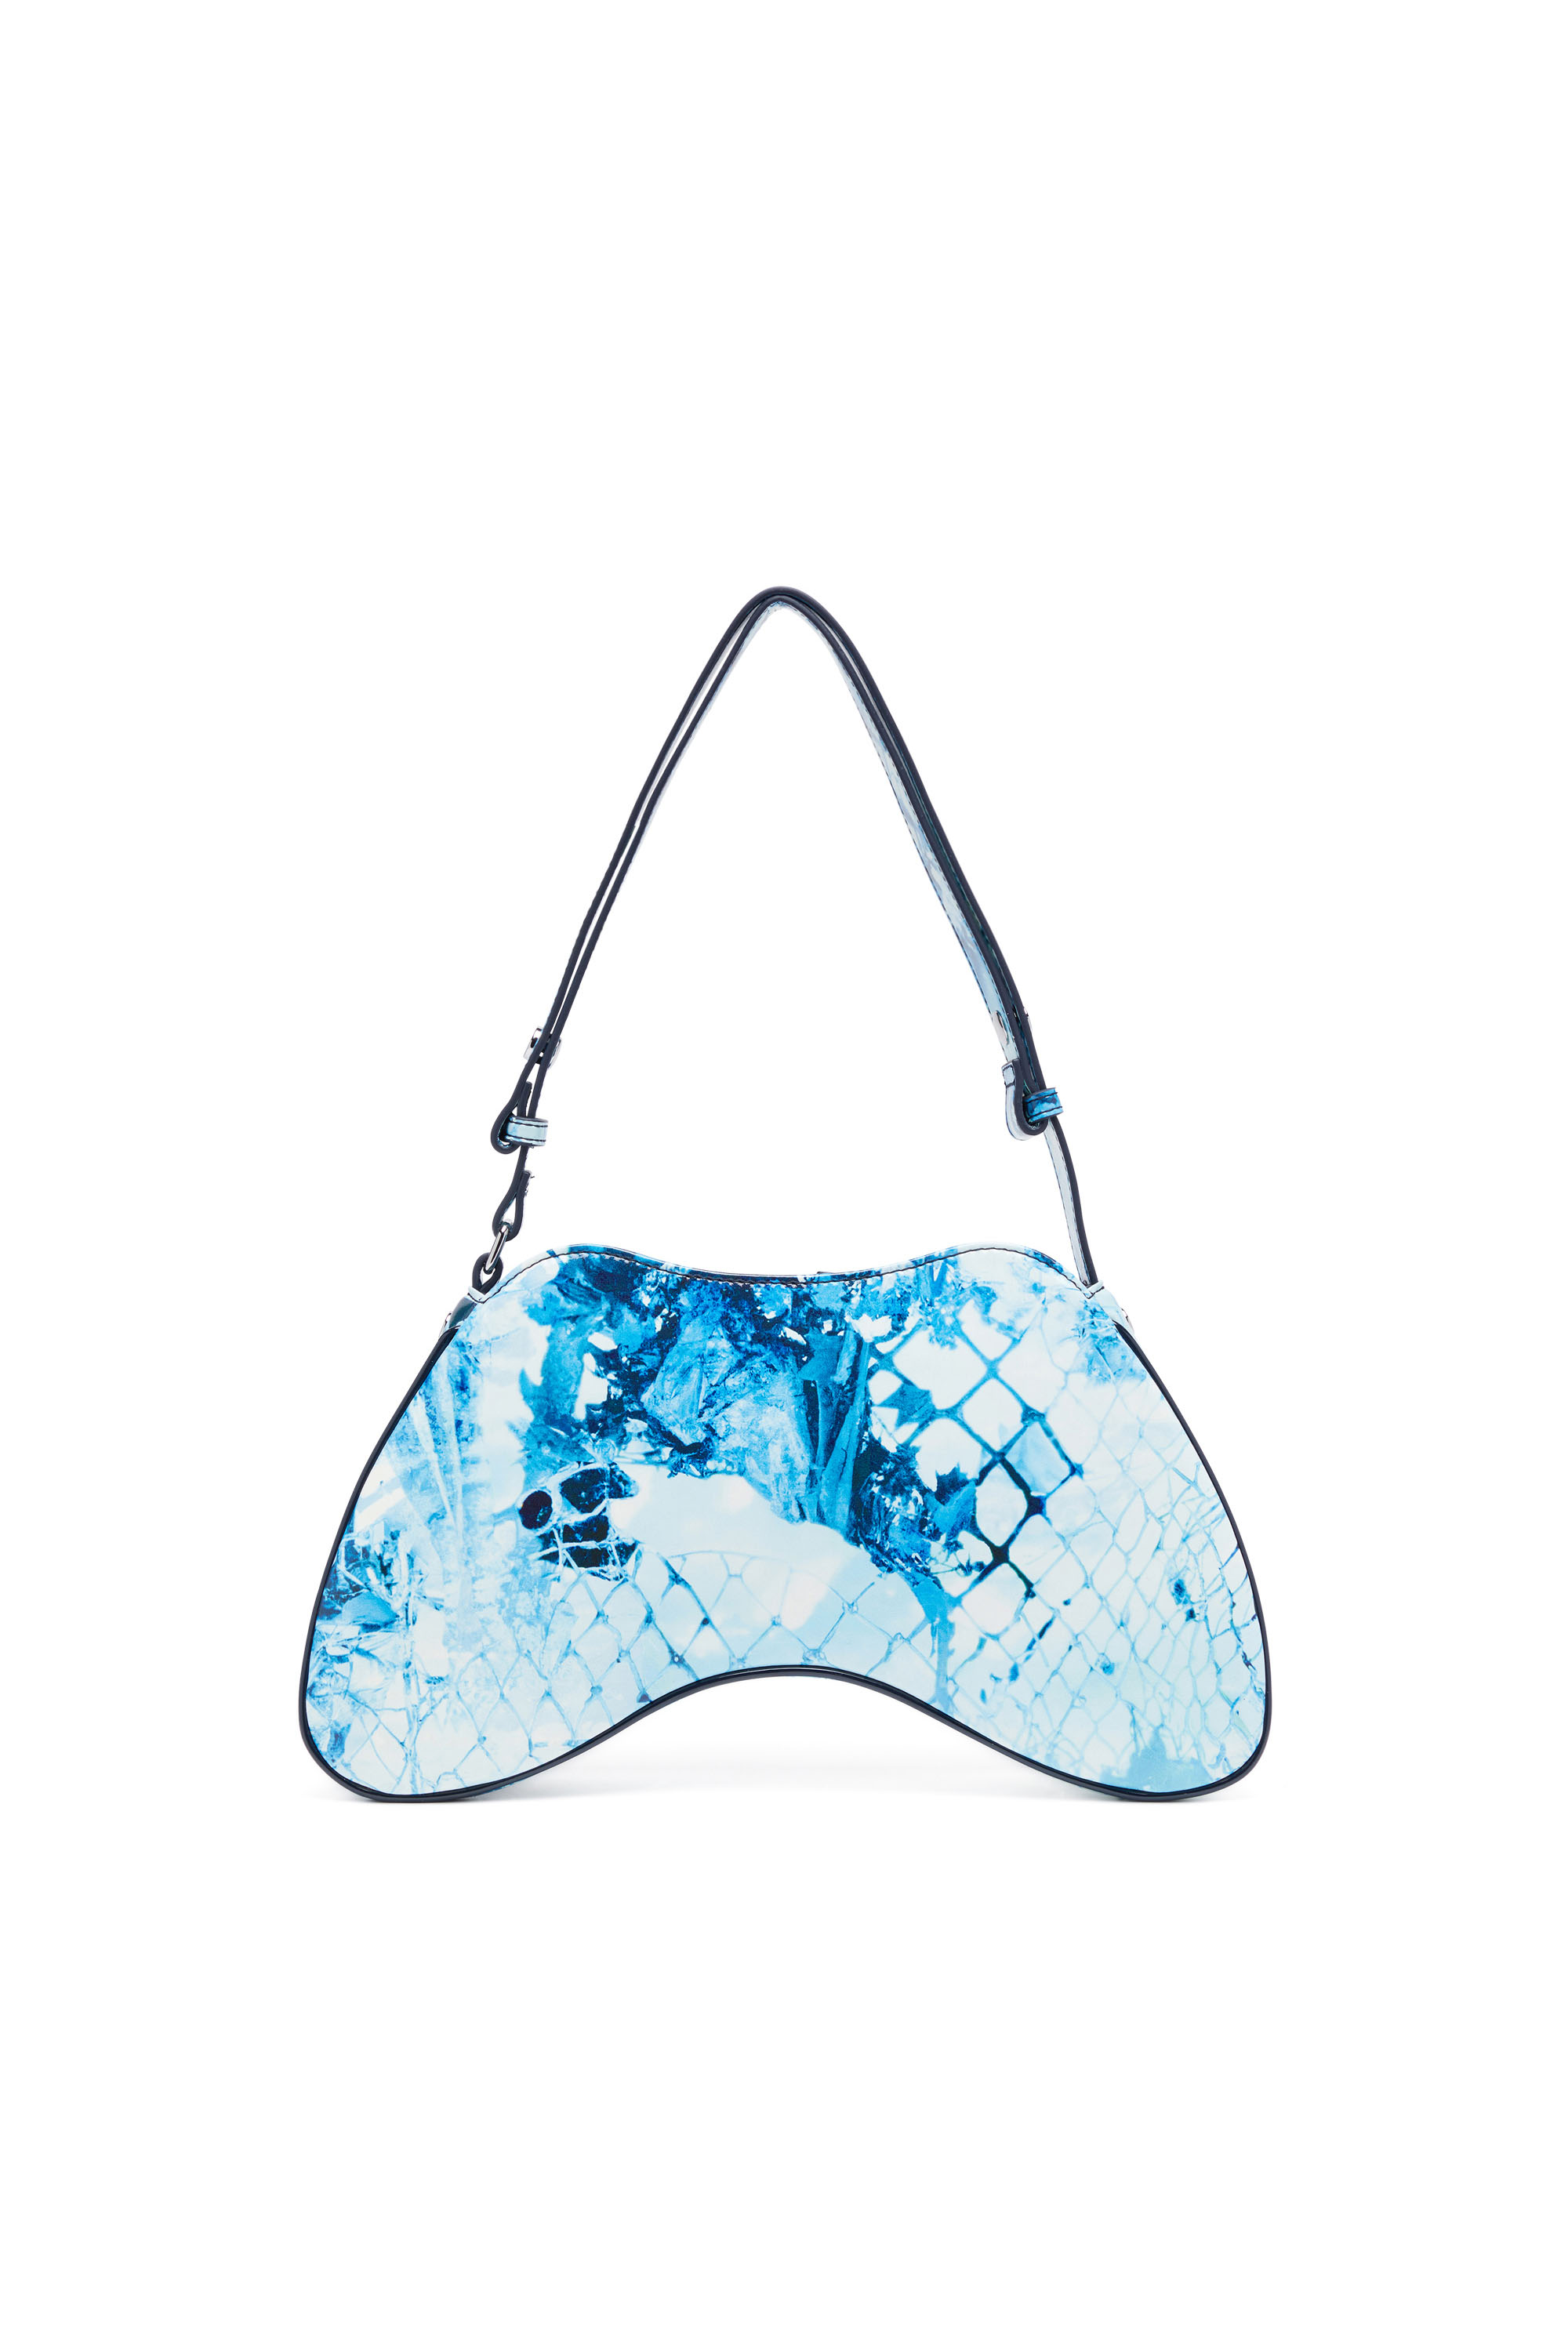 Diesel - PLAY SHOULDER, Woman Play-Shoulder bag in printed glossy PU in Blue - Image 3